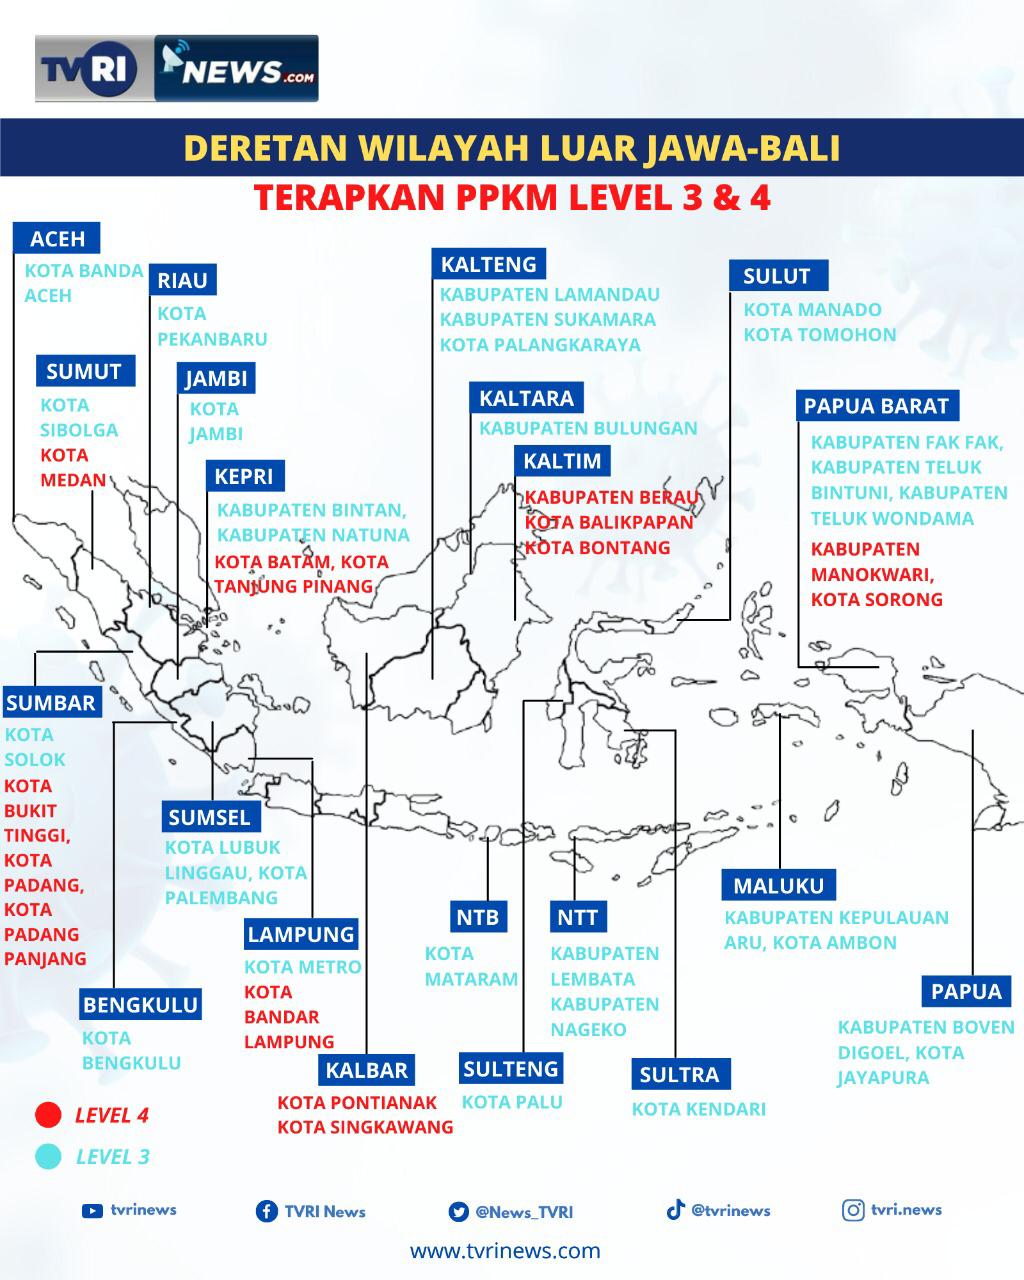 Daftar Wilayah PPKM Level 3 dan 4 di Luar Jawa-Bali